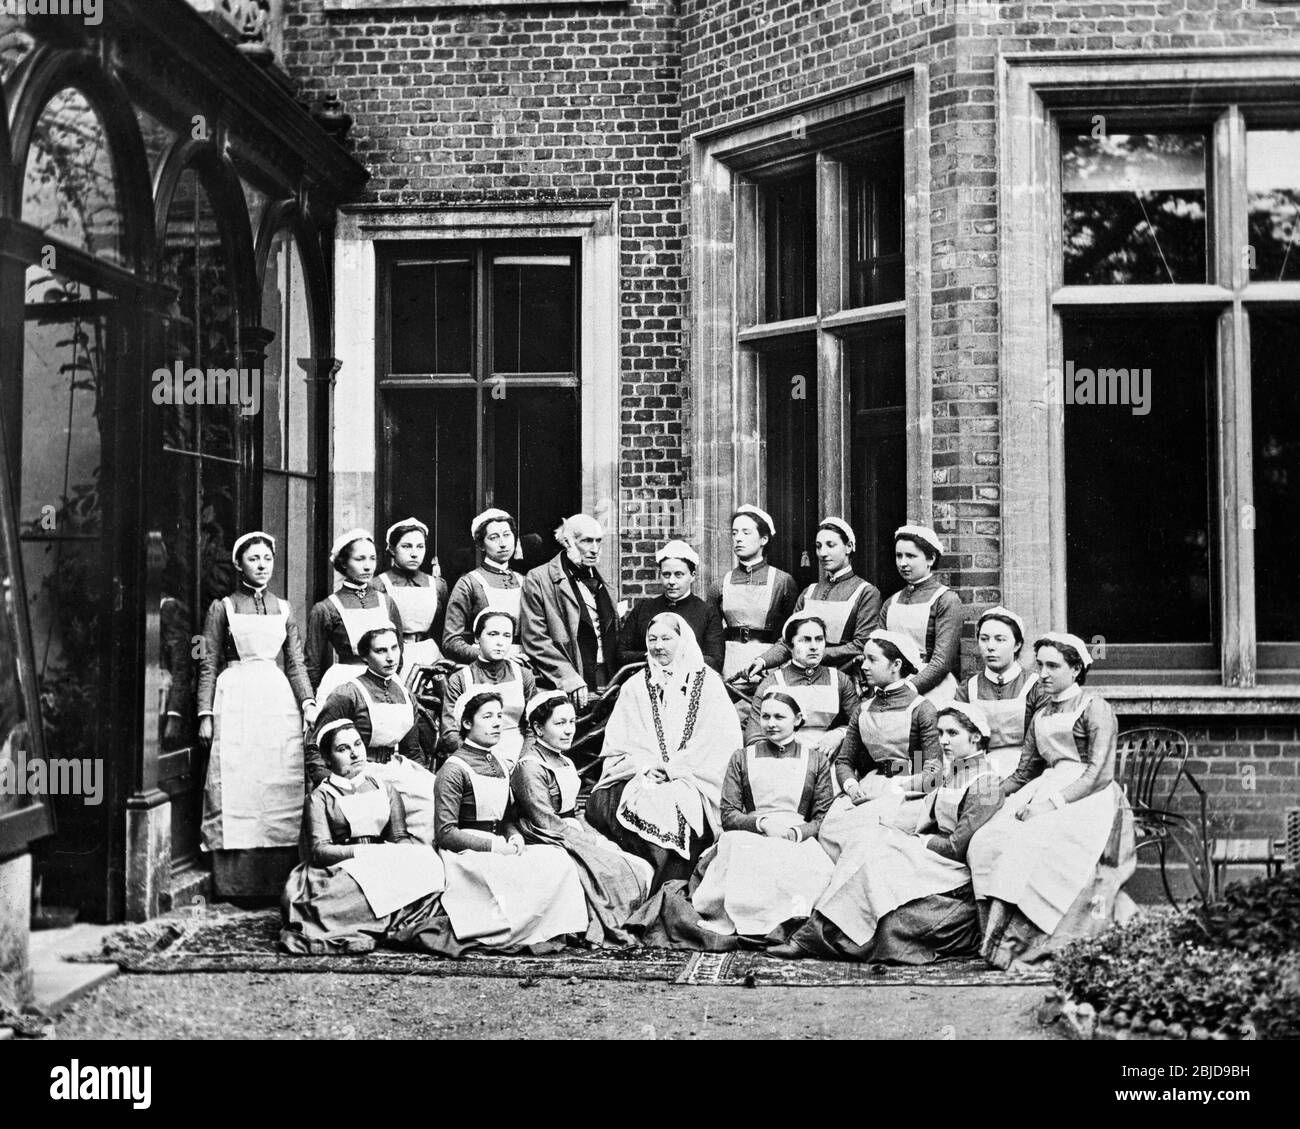 Foto vittoriana in bianco e nero d'epoca scattata nel 1886. Foto mostra l'infermiera Florence Nightingale e gli infermieri della scuola di formazione Nightingale di Claydon House, dove ha trascorso parte della sua vita. La Casa era di proprietà di Sir Harry Verney, che è visto anche nella fotografia. Foto Stock